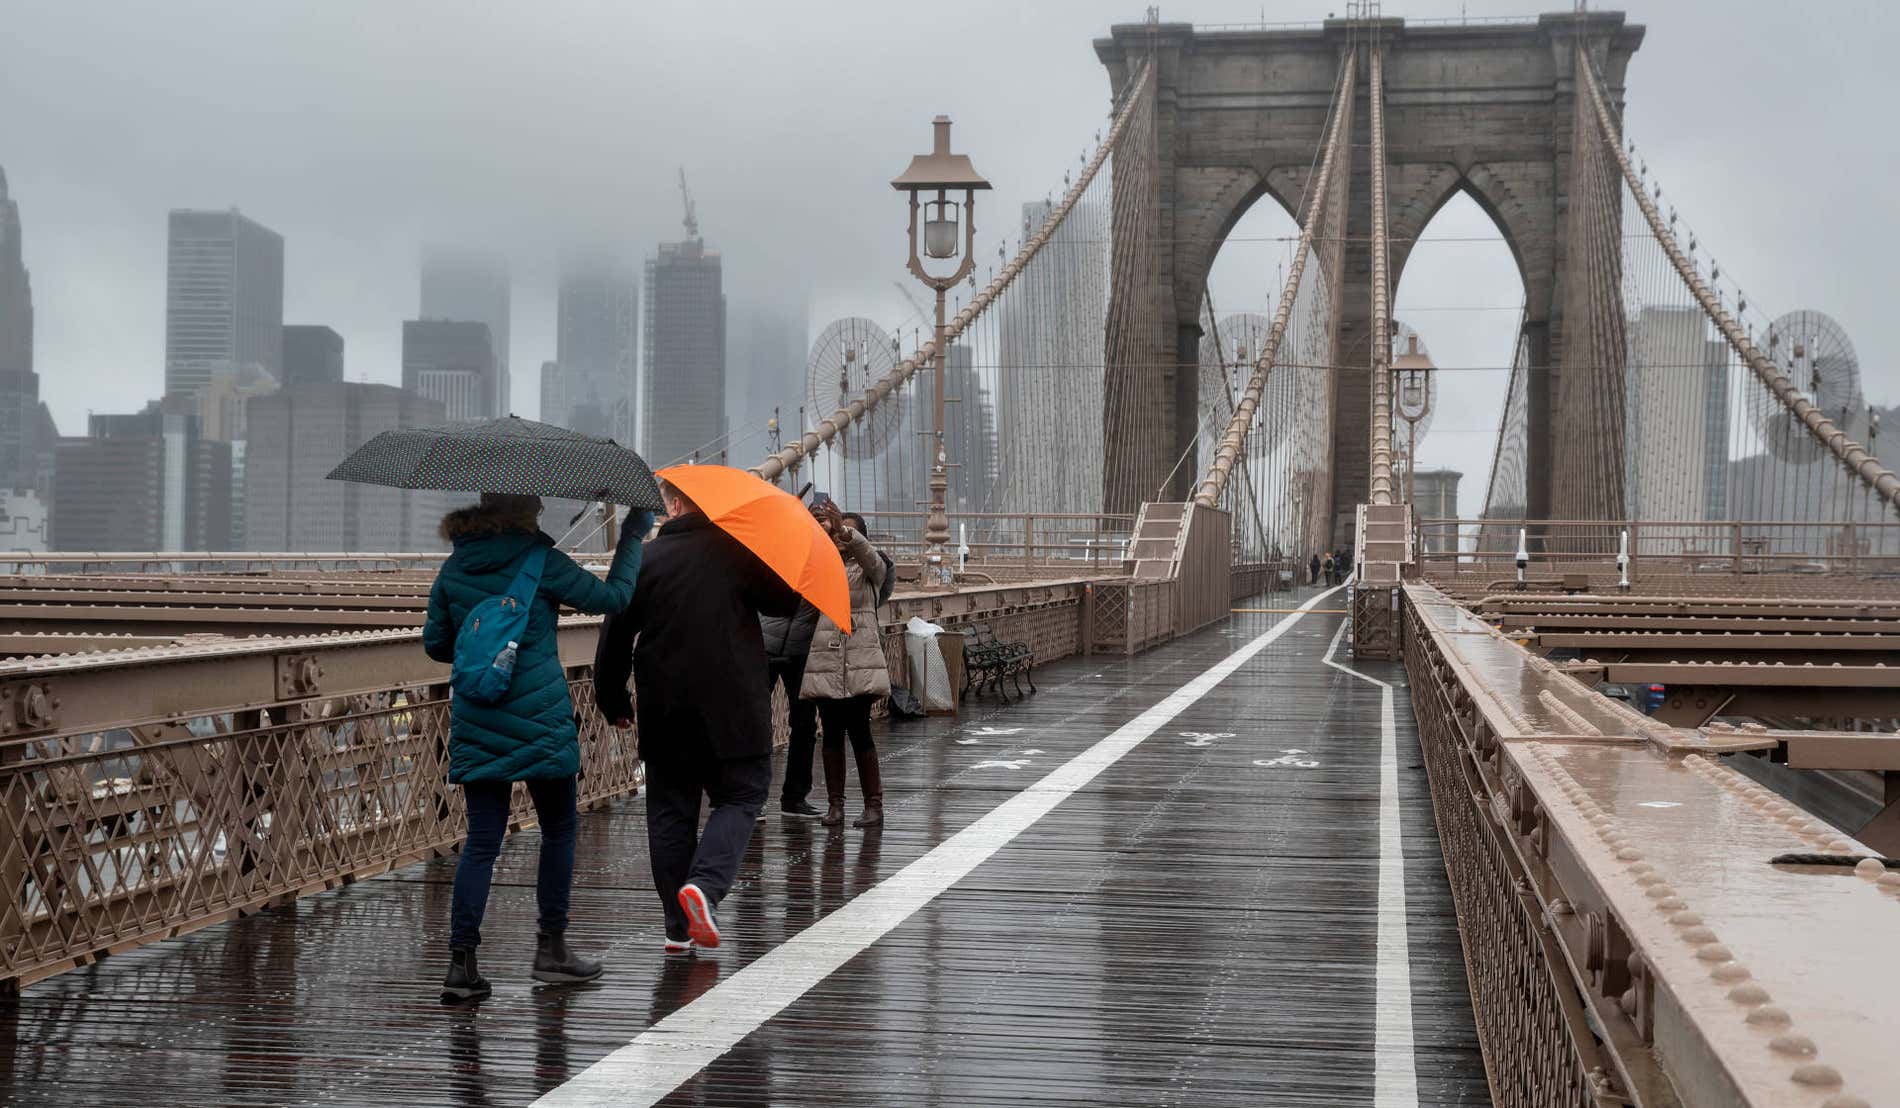 Cosa fare in un giorno di pioggia a New York? - Civitatis